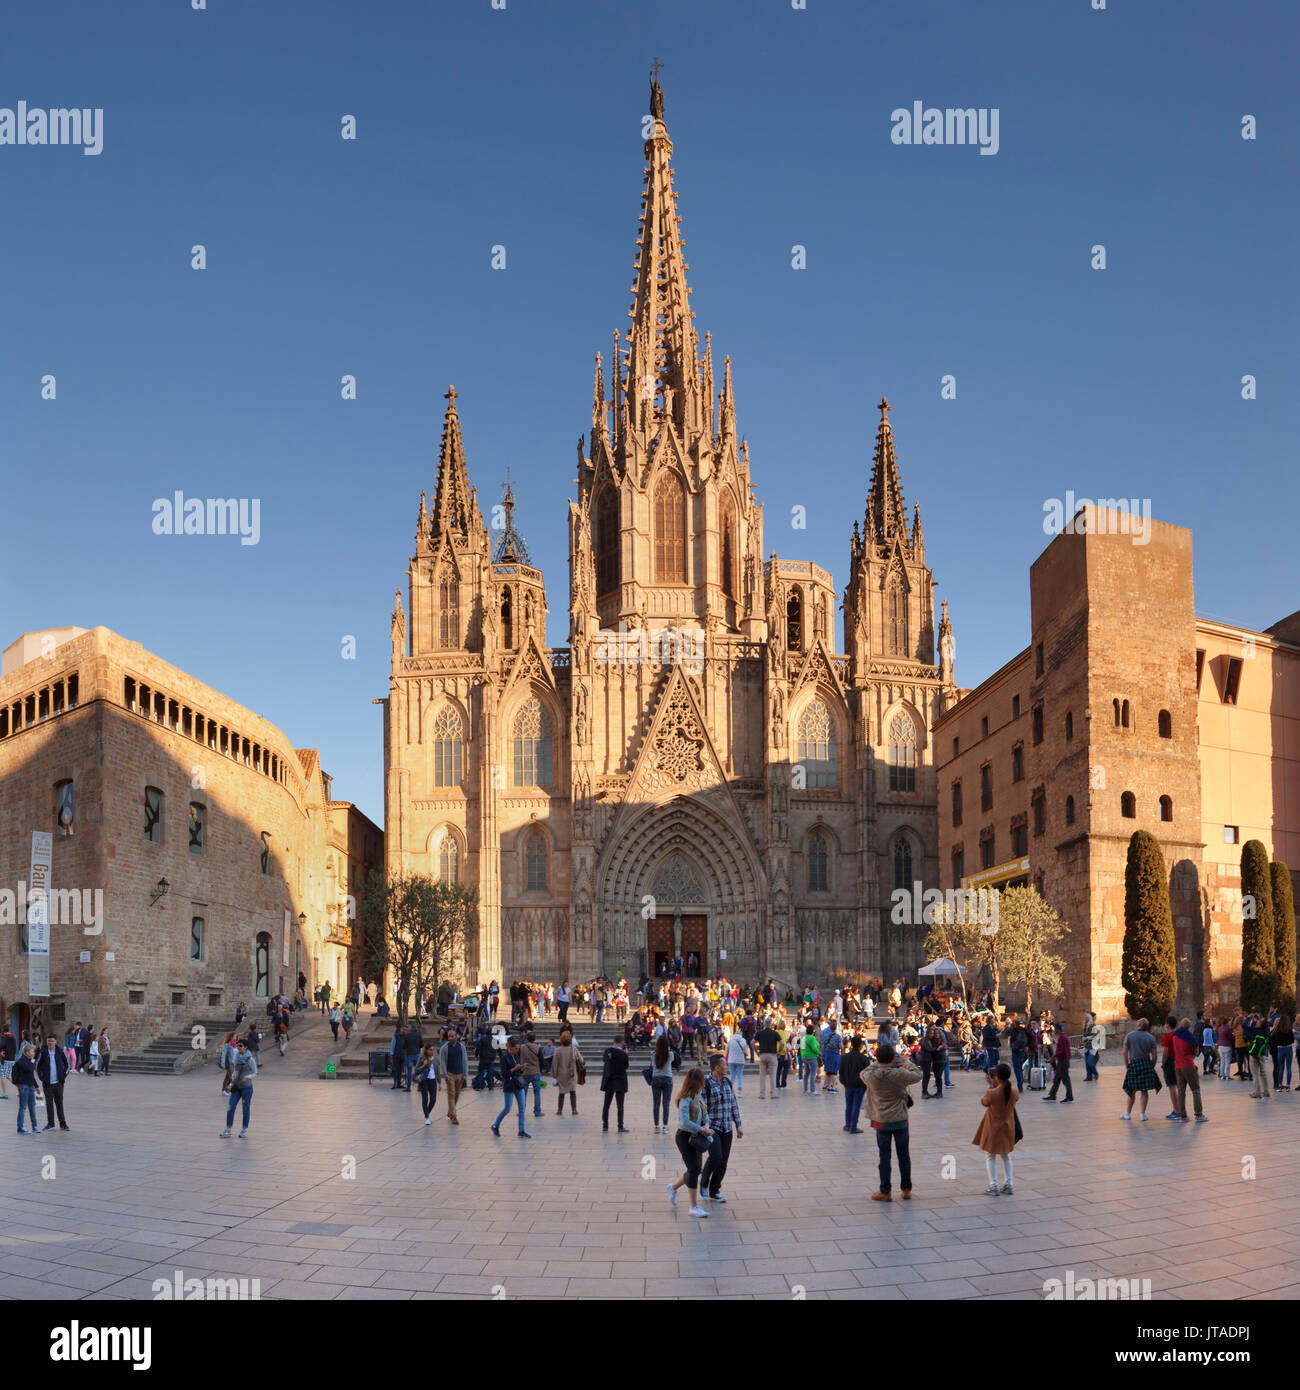 La Catedral de la Santa Creu i Santa Eulalia (Cattedrale di Barcellona), Barri Gotic, Barcellona, in Catalogna, Spagna, Europa Foto Stock